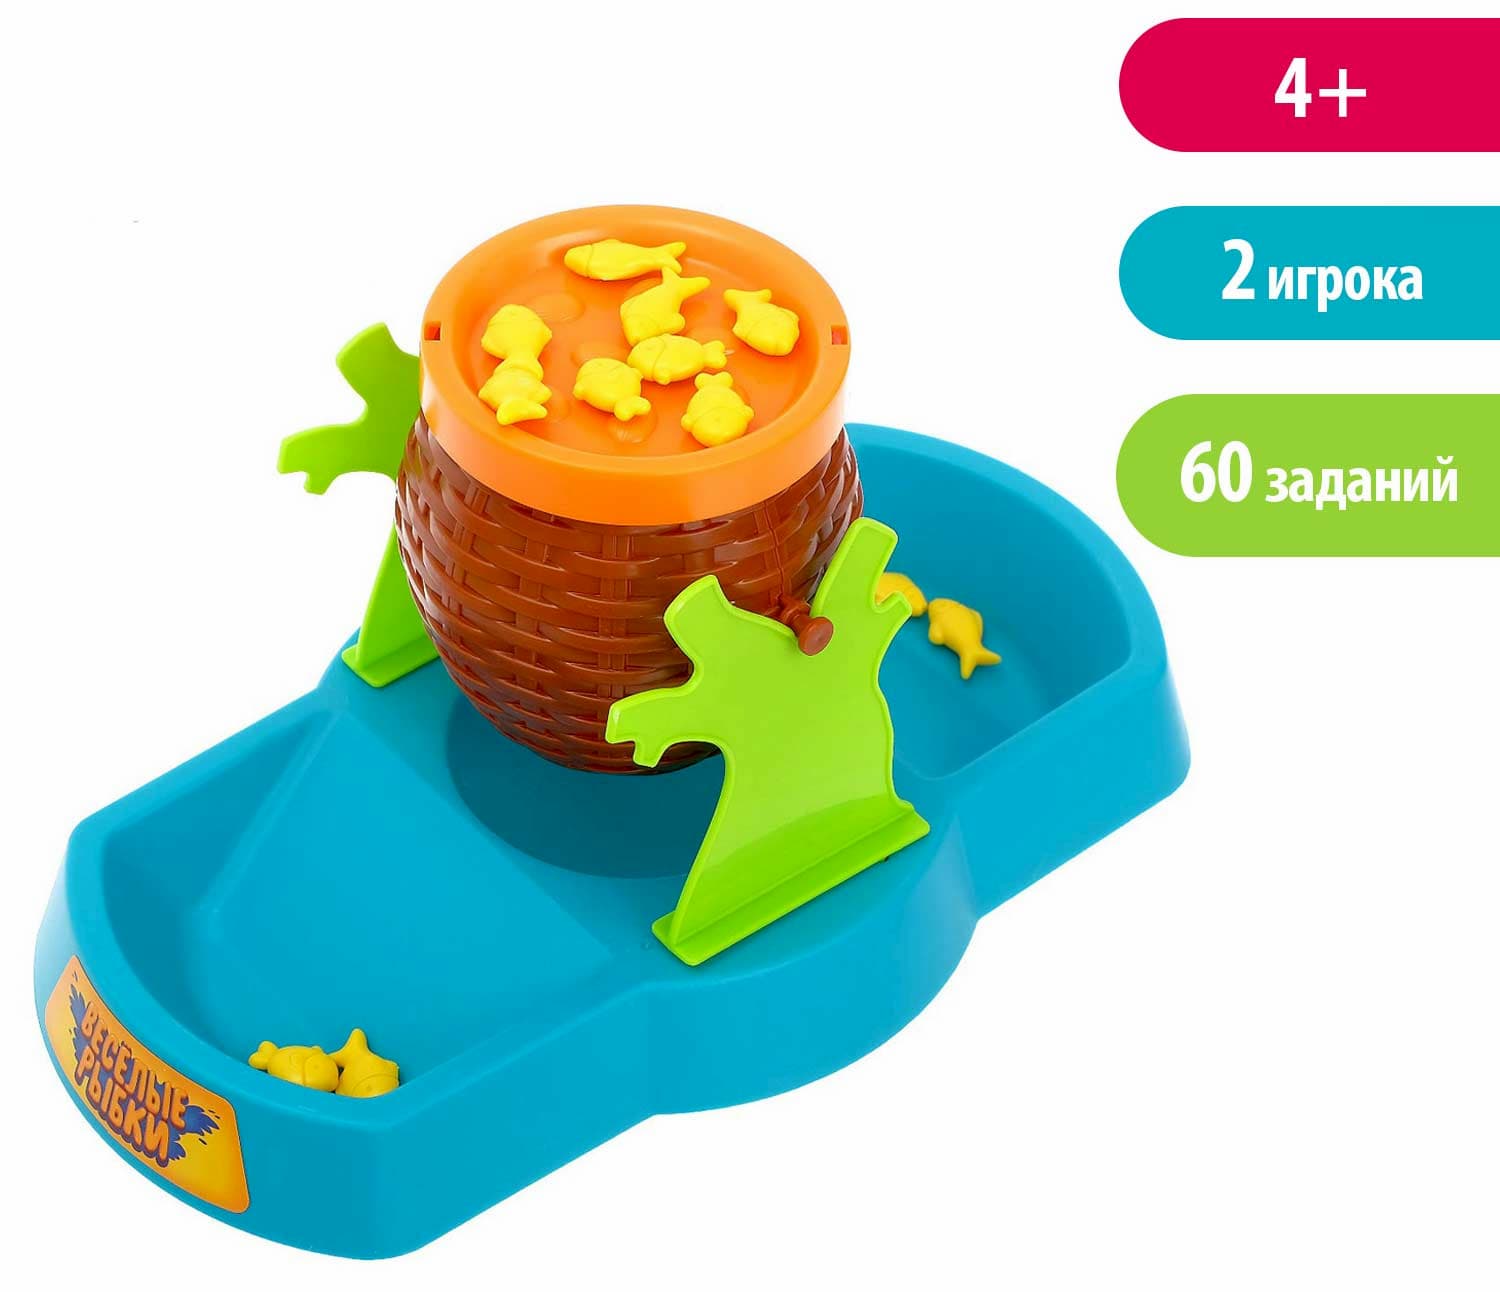 Детская Настольная игра на равновесие Zhingle «Не рассыпь рыбок!» для развития логики и мелкой моторики